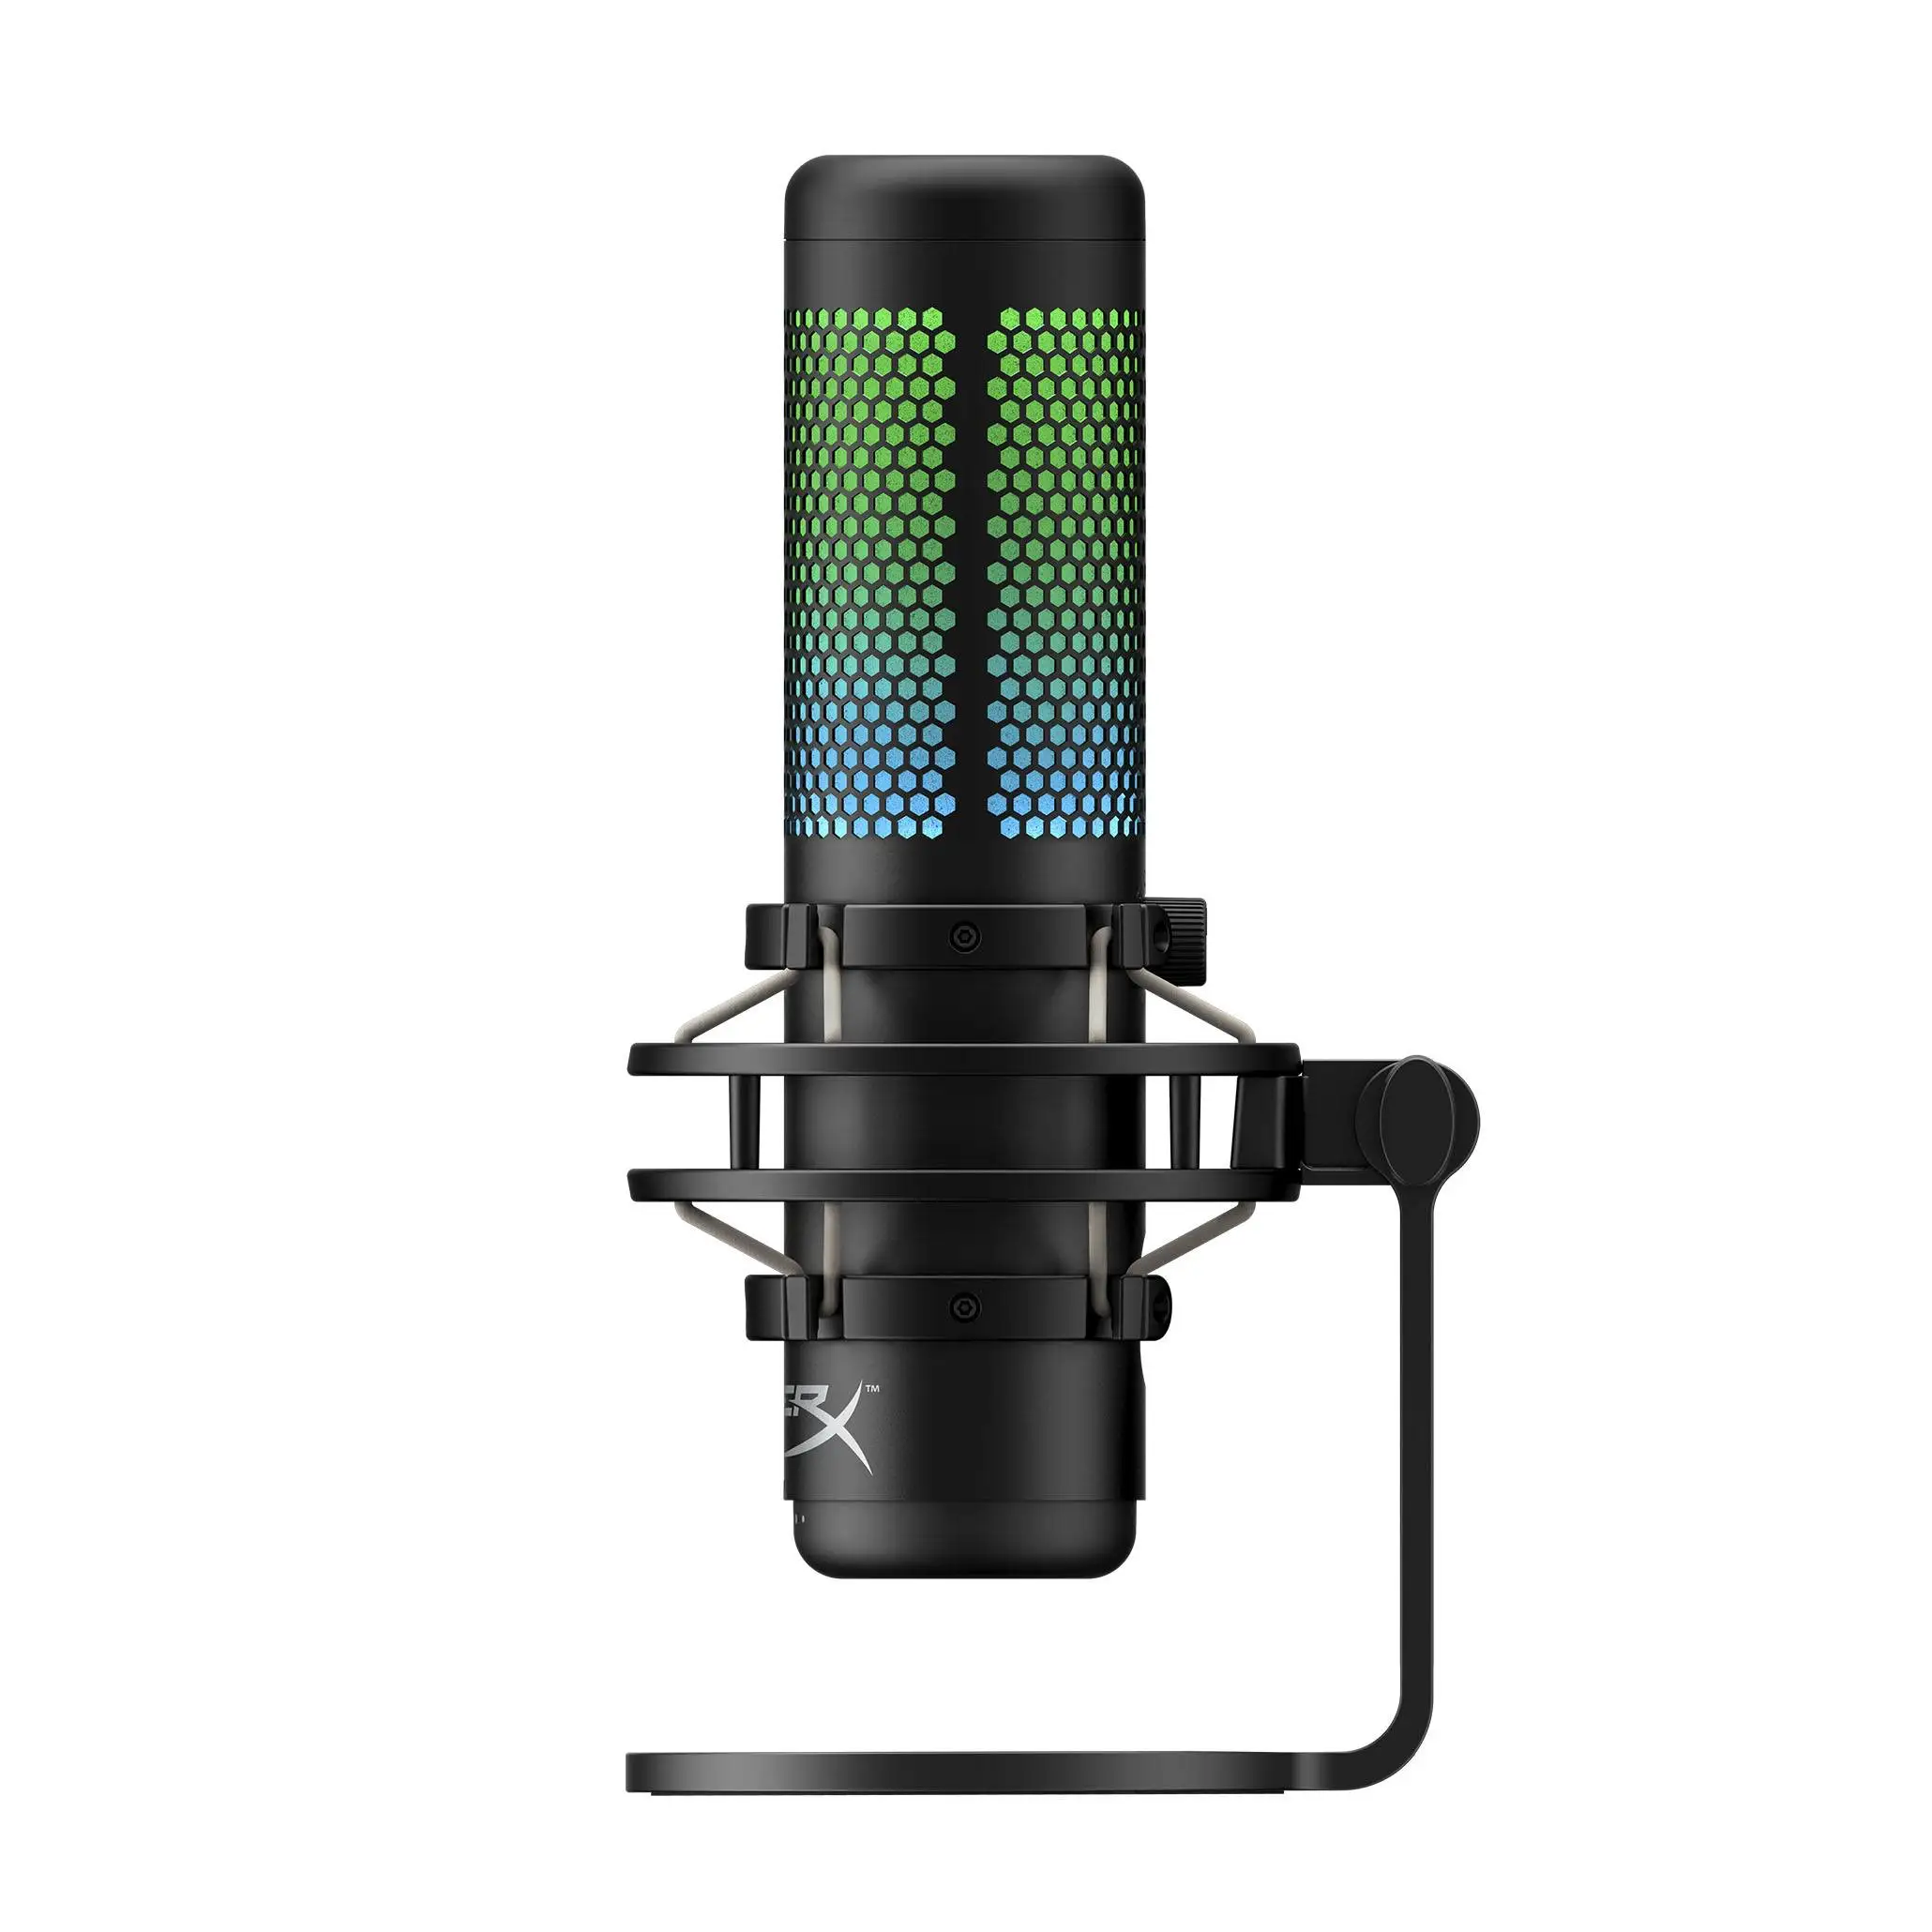 Hyper X QuadCast S Профессиональный Электронный Спортивный микрофон компьютерный живой микрофон RGB микрофон устройство Голосовая игра